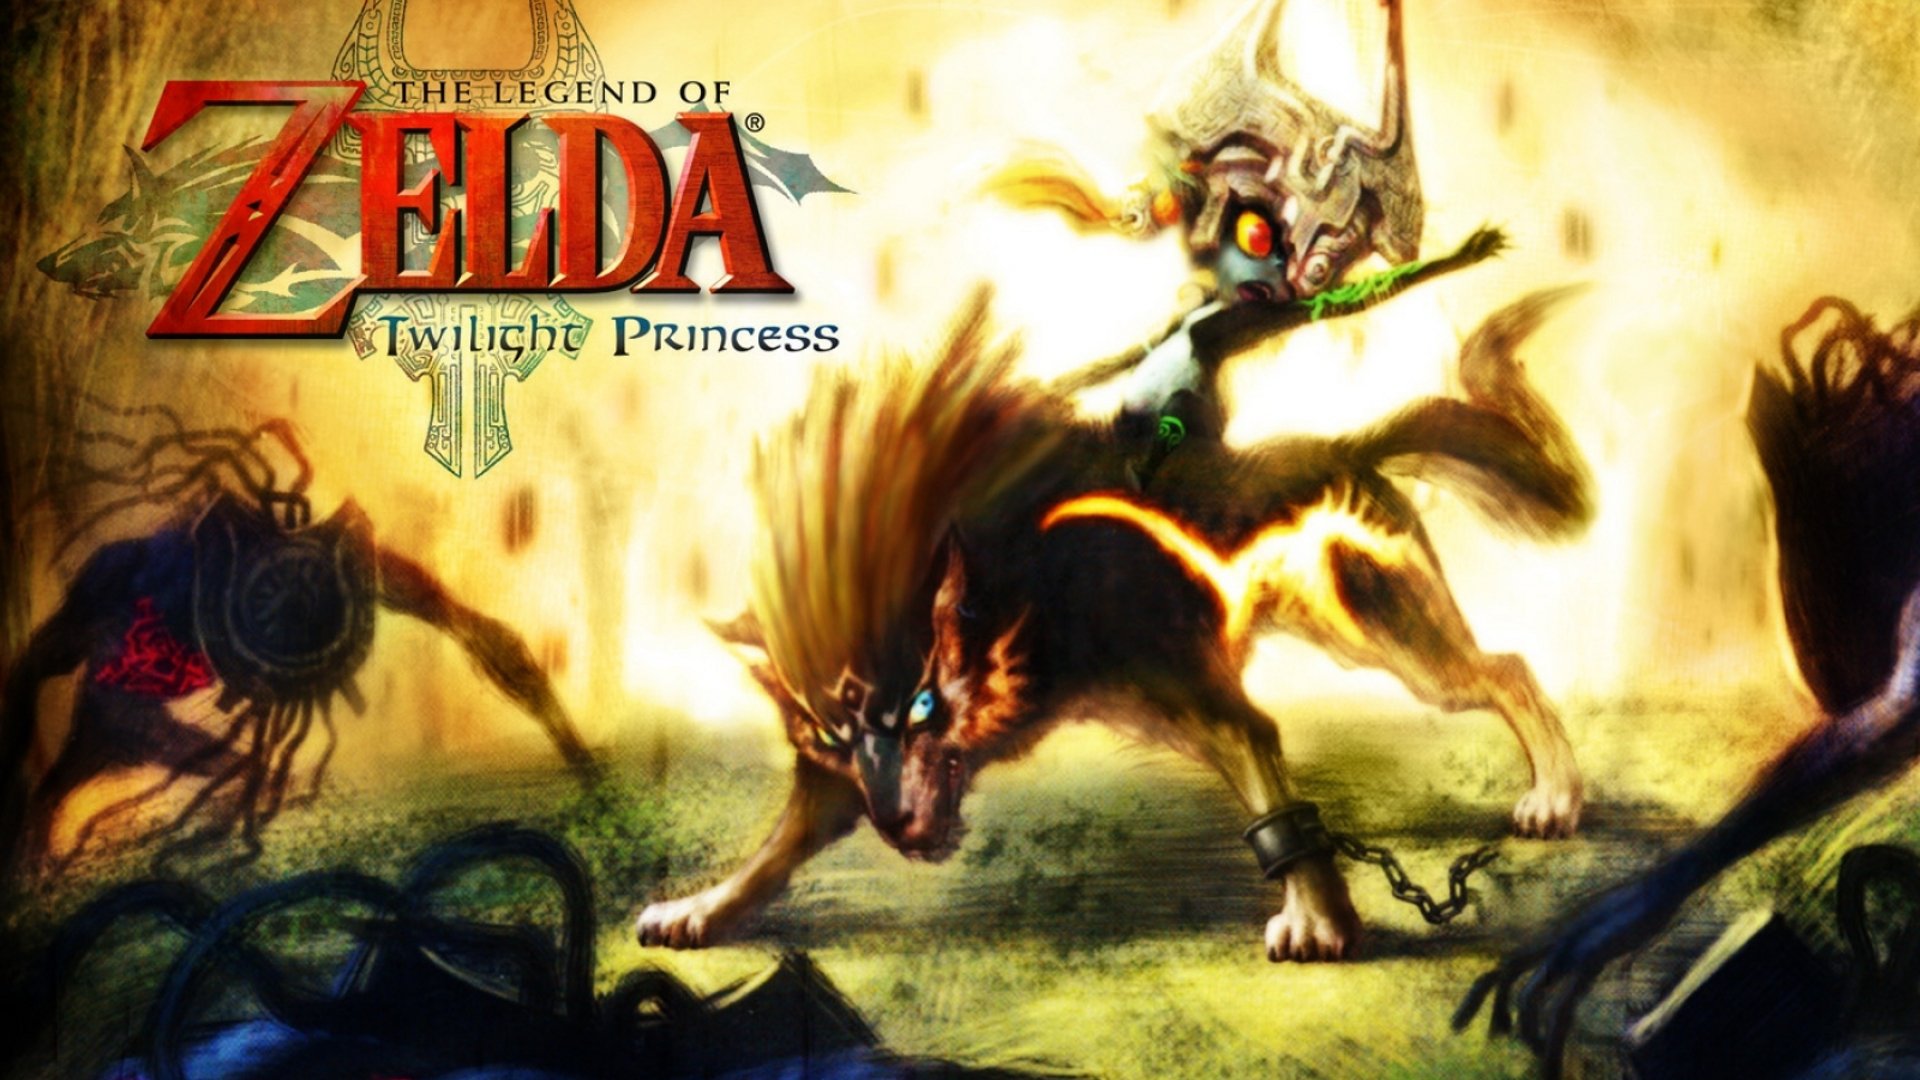 la leggenda di zelda twilight princess wallpaper,gioco di avventura e azione,demone,gioco per pc,personaggio fittizio,cg artwork